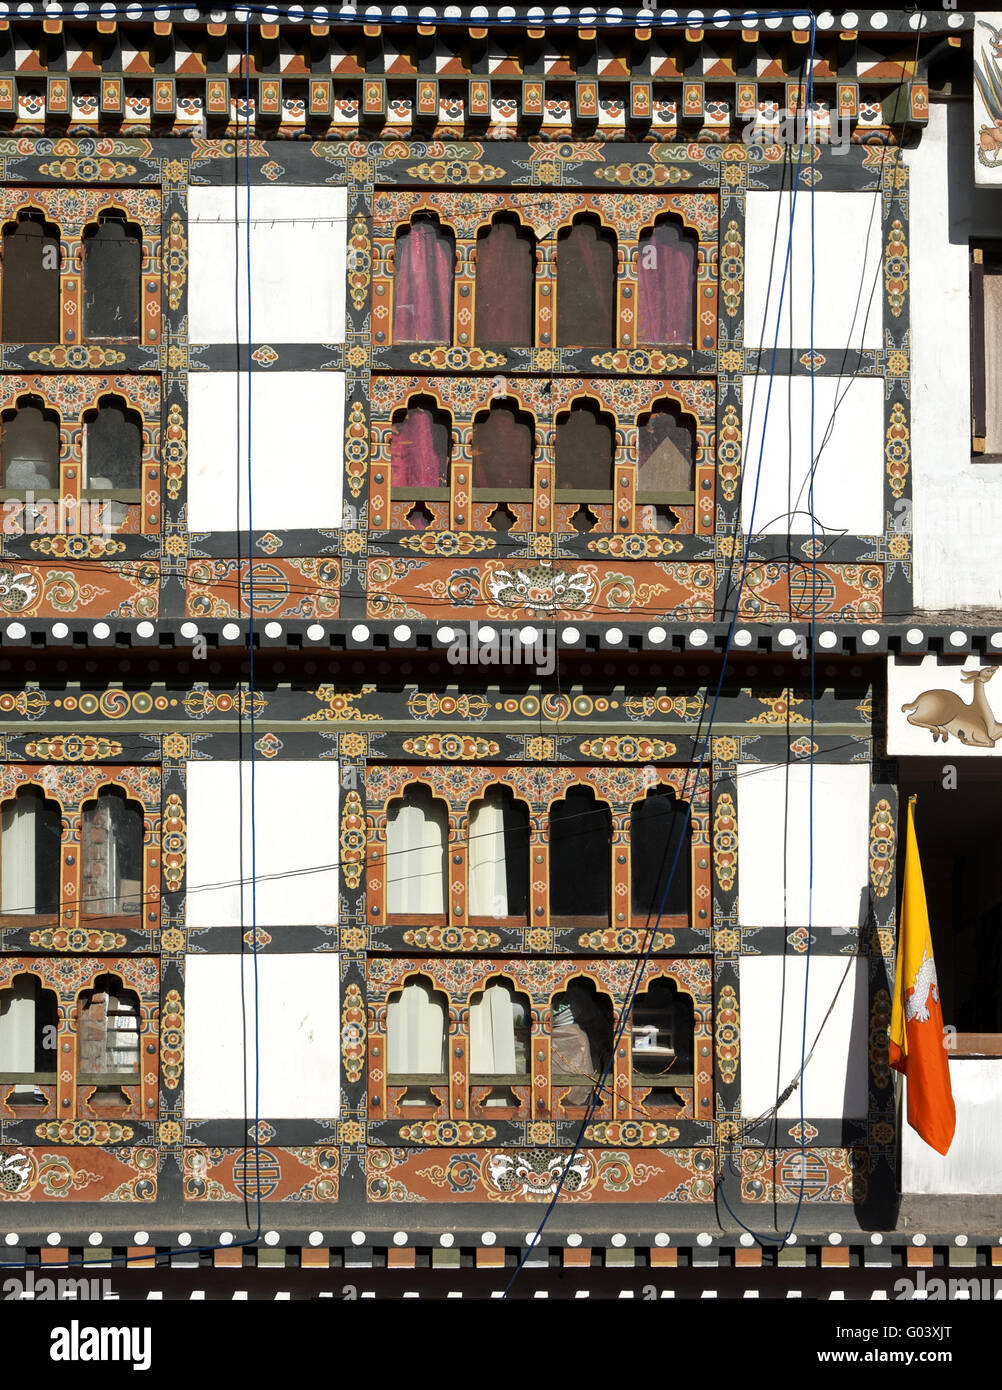 Avant traditionnel avec des fenêtres ornées, Bhoutan Banque D'Images